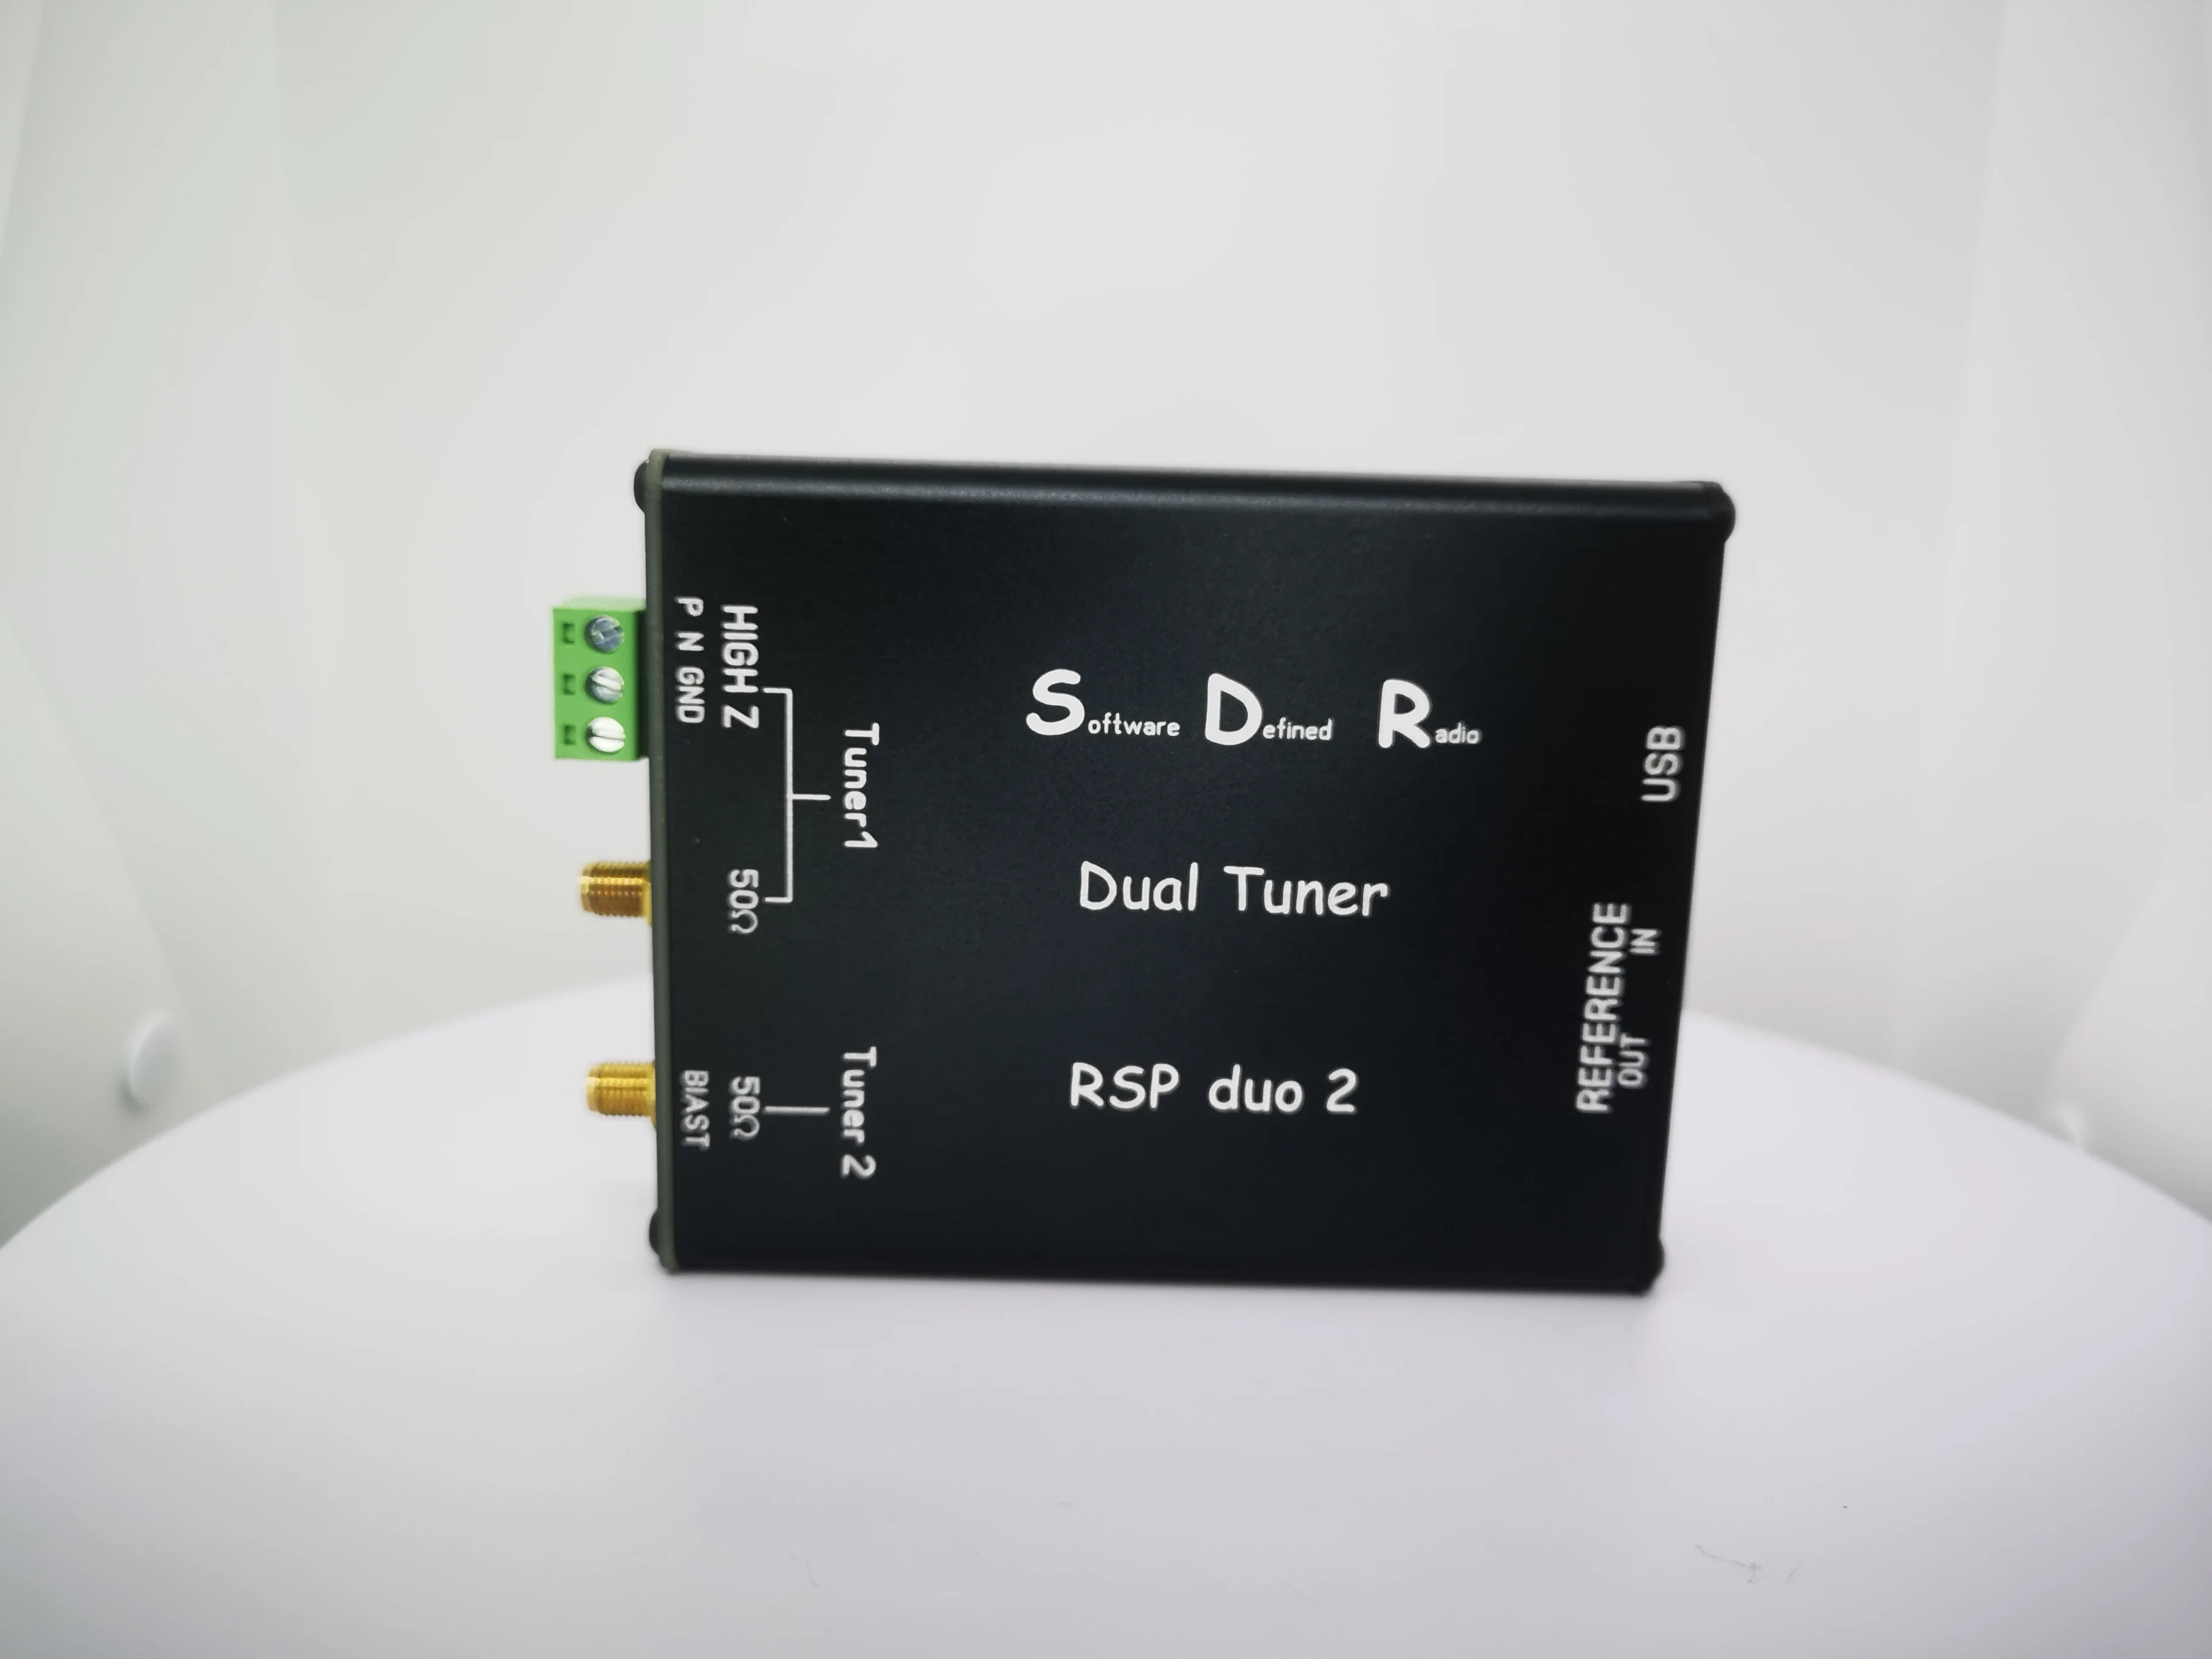 SDR RSP-duo2 כפול טיונר תוכנה מוגדר מקלט רדיו 14-bit ADC 1kHz - 2GHz פס רחב רדיו בגלים קצרים